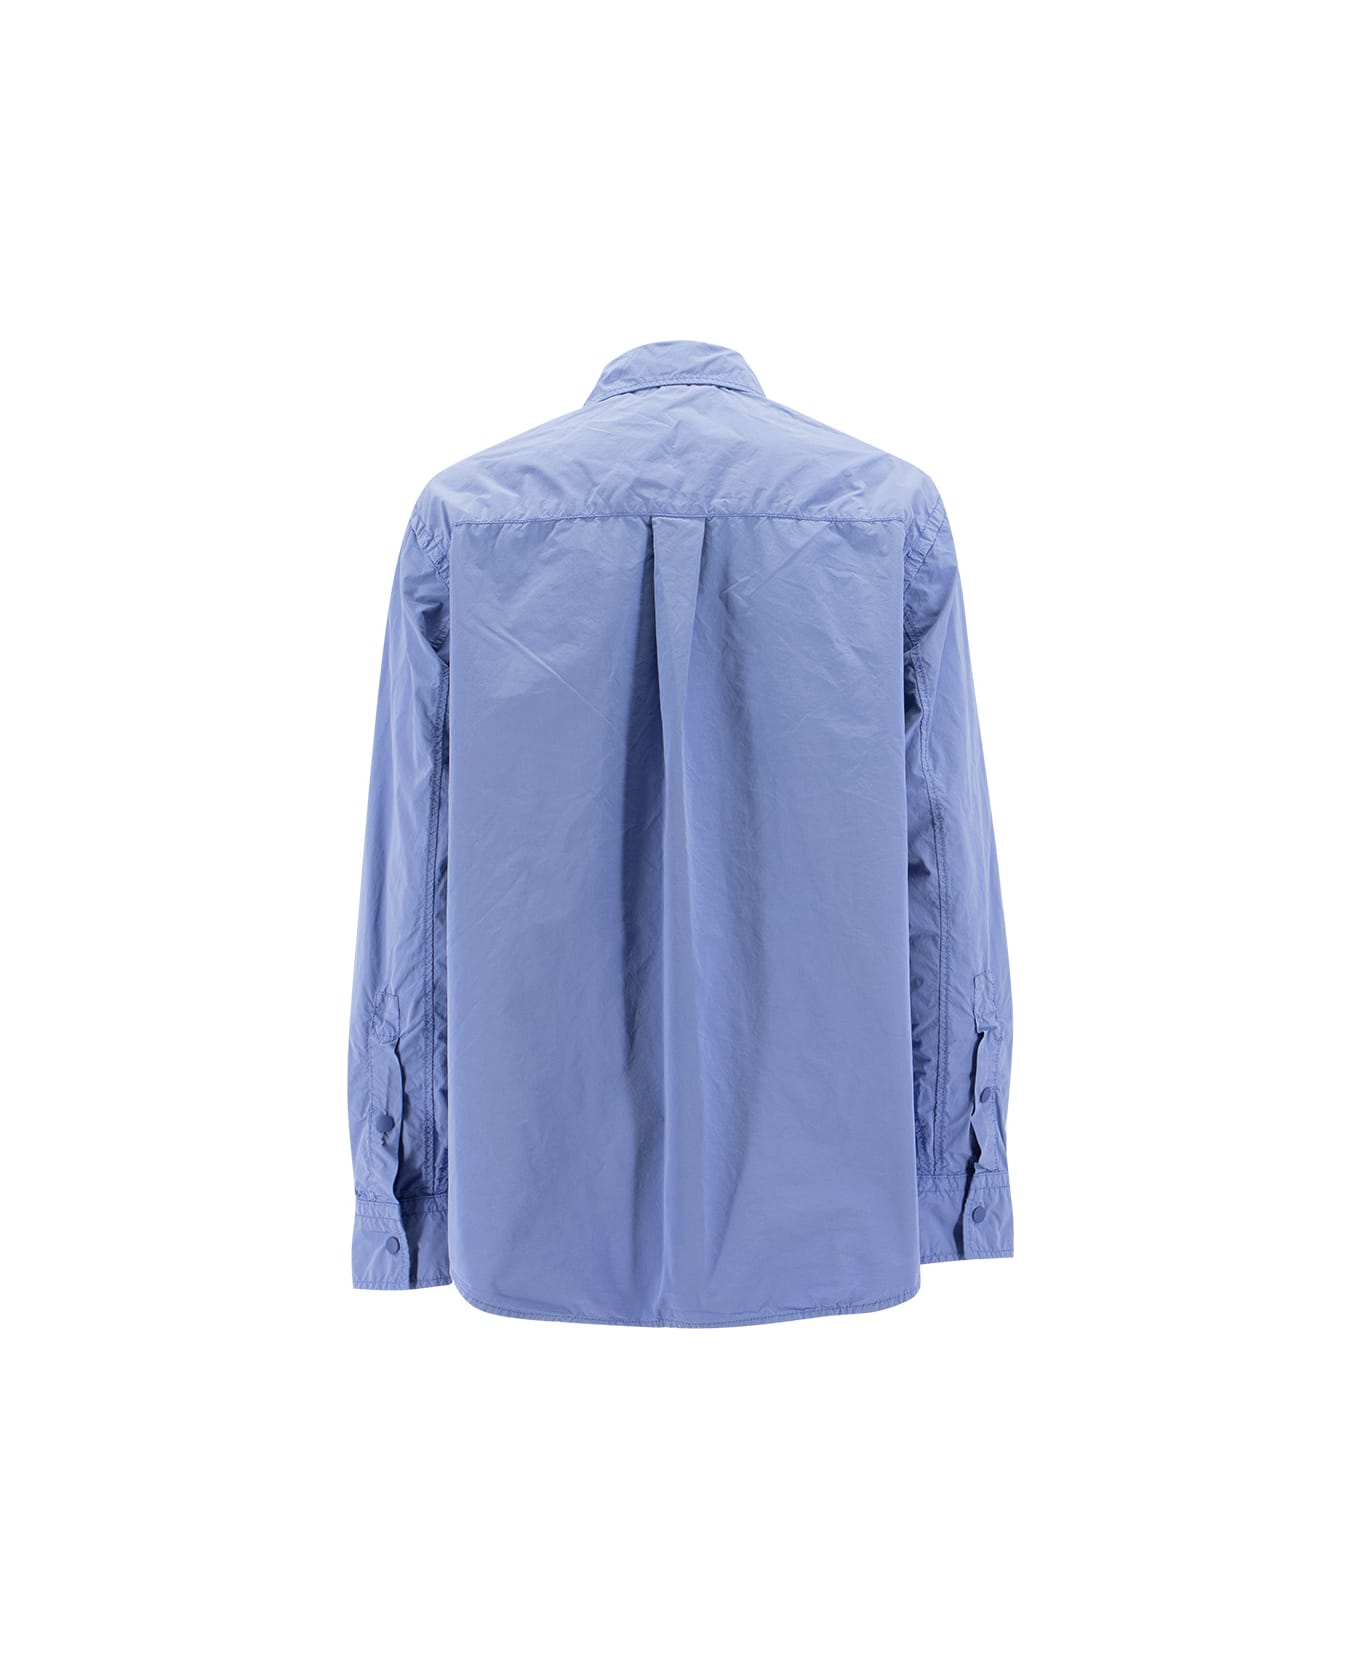 Aspesi Cassell Shirt Jacket - LIGHT BLUE